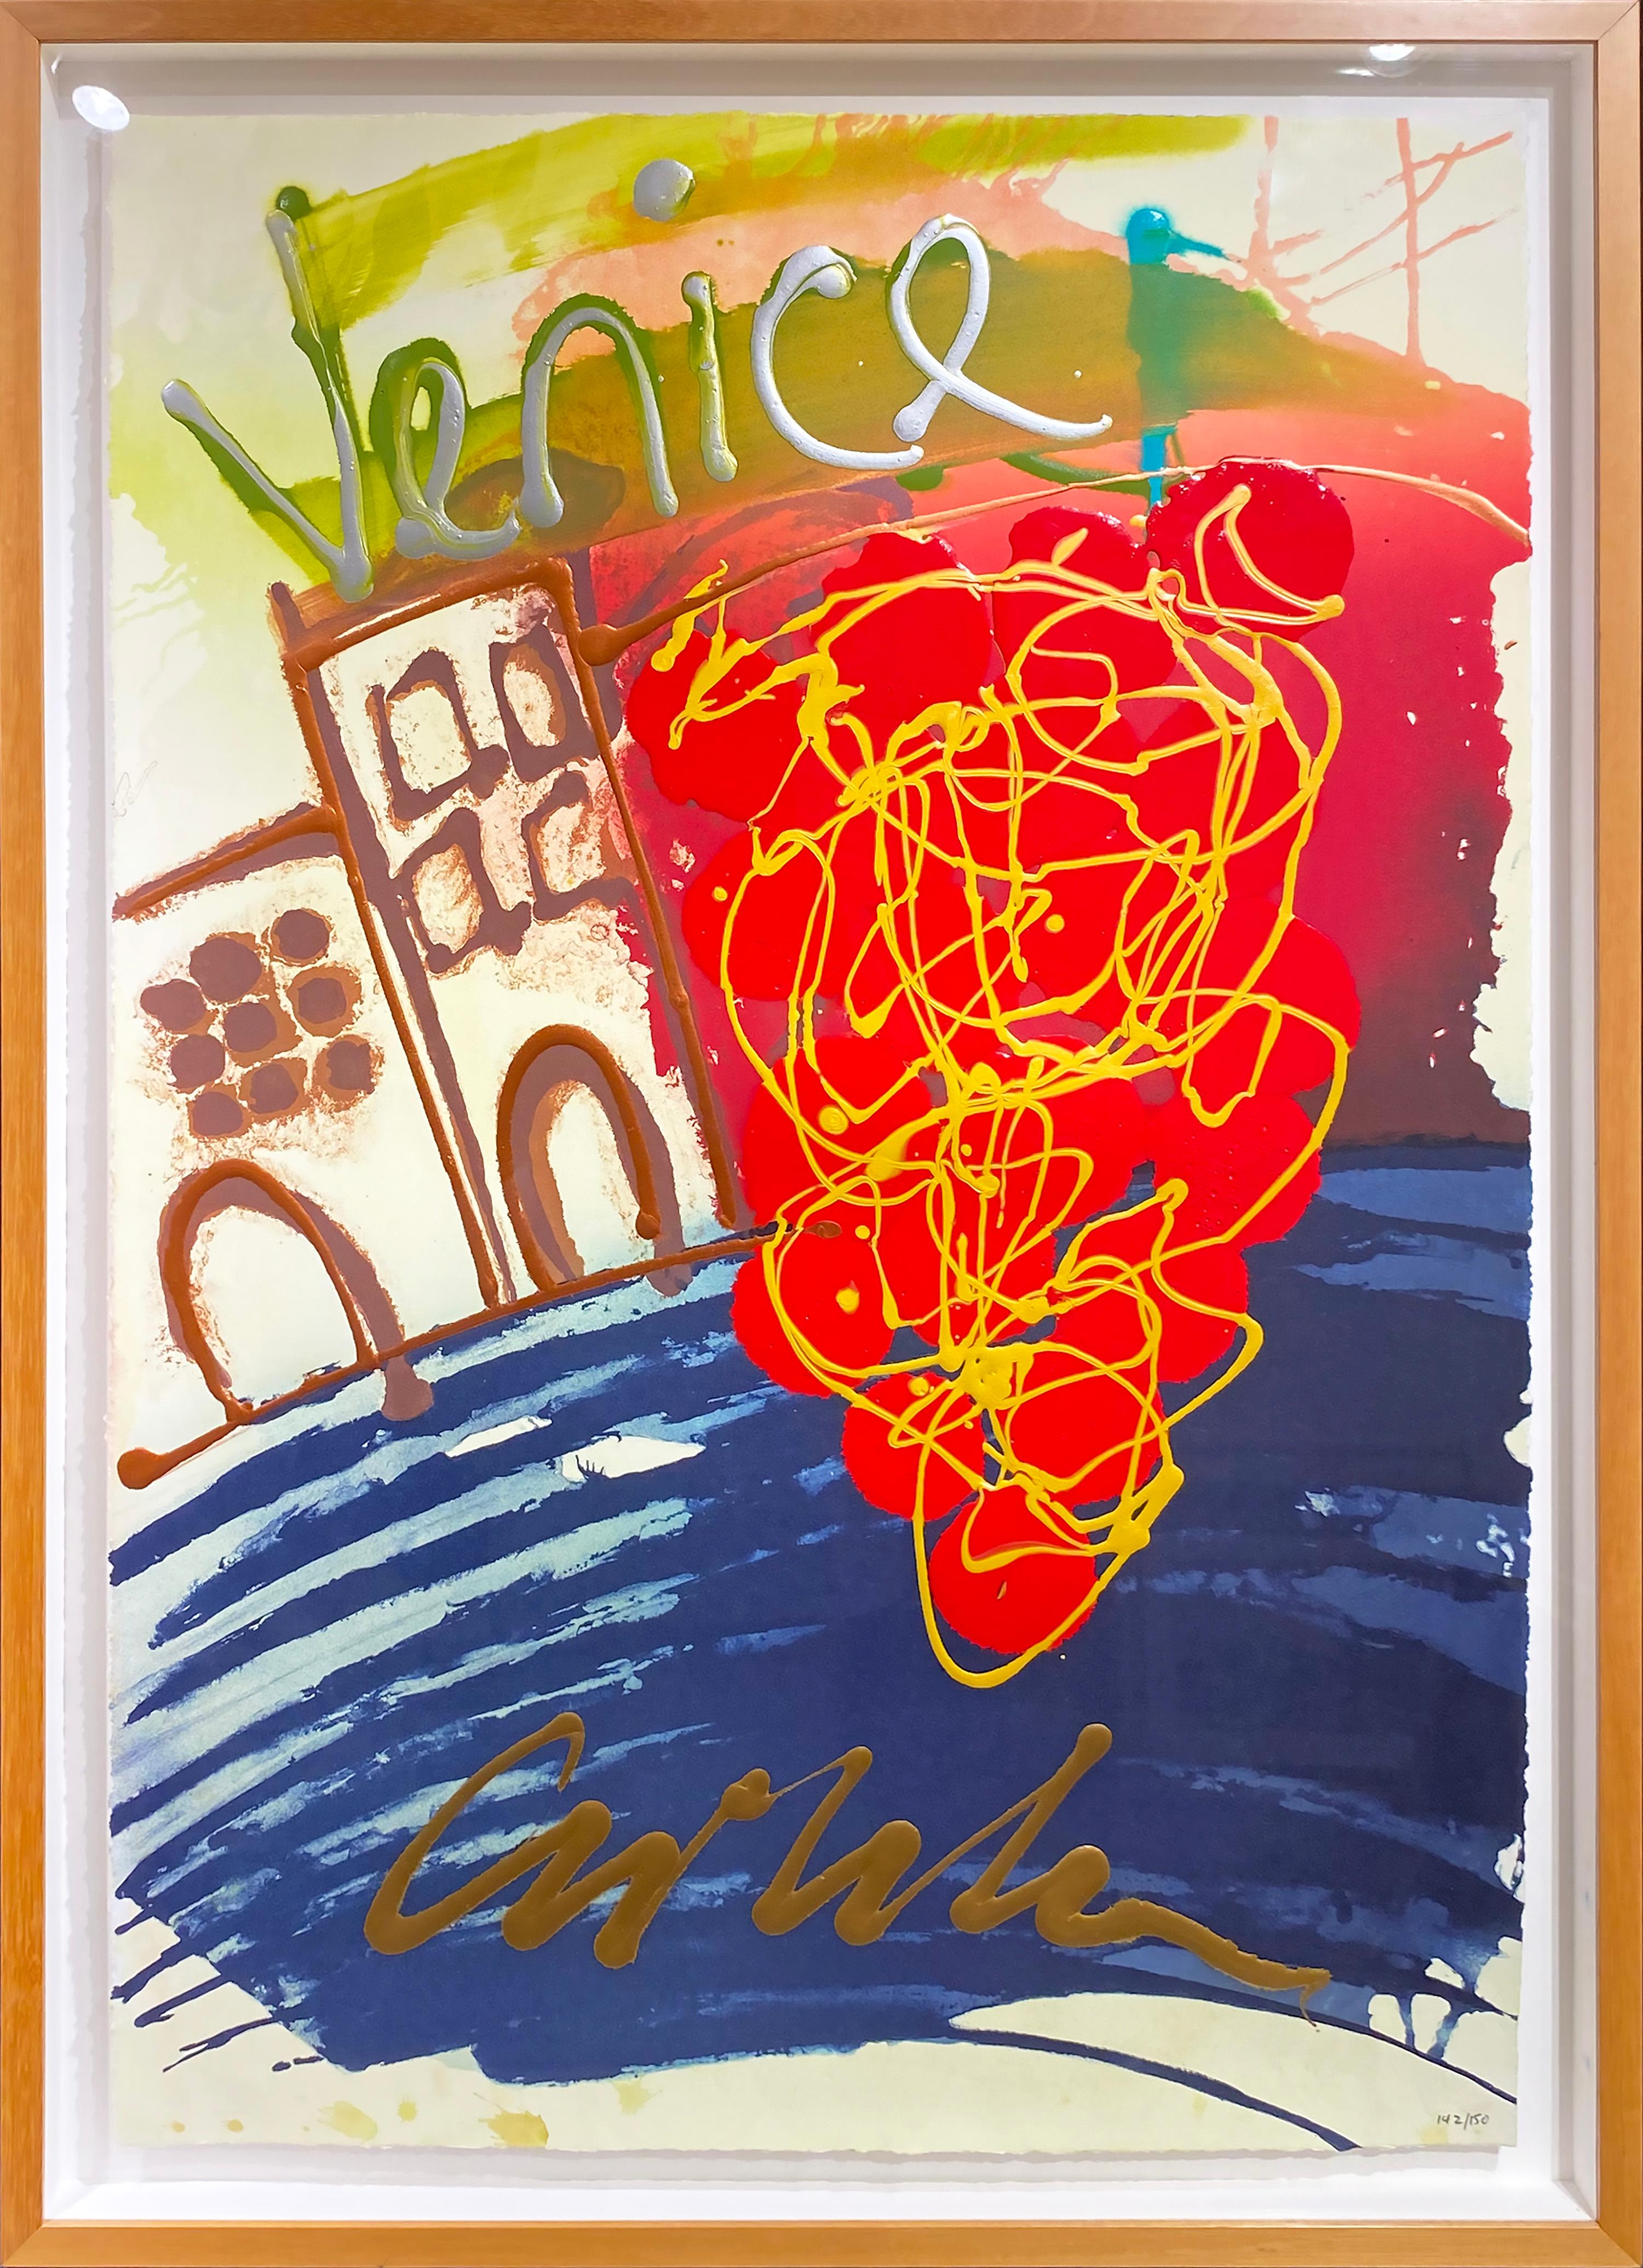 Schwebende Zeichnung, Venedig (Amerikanische Moderne), Mixed Media Art, von Dale Chihuly